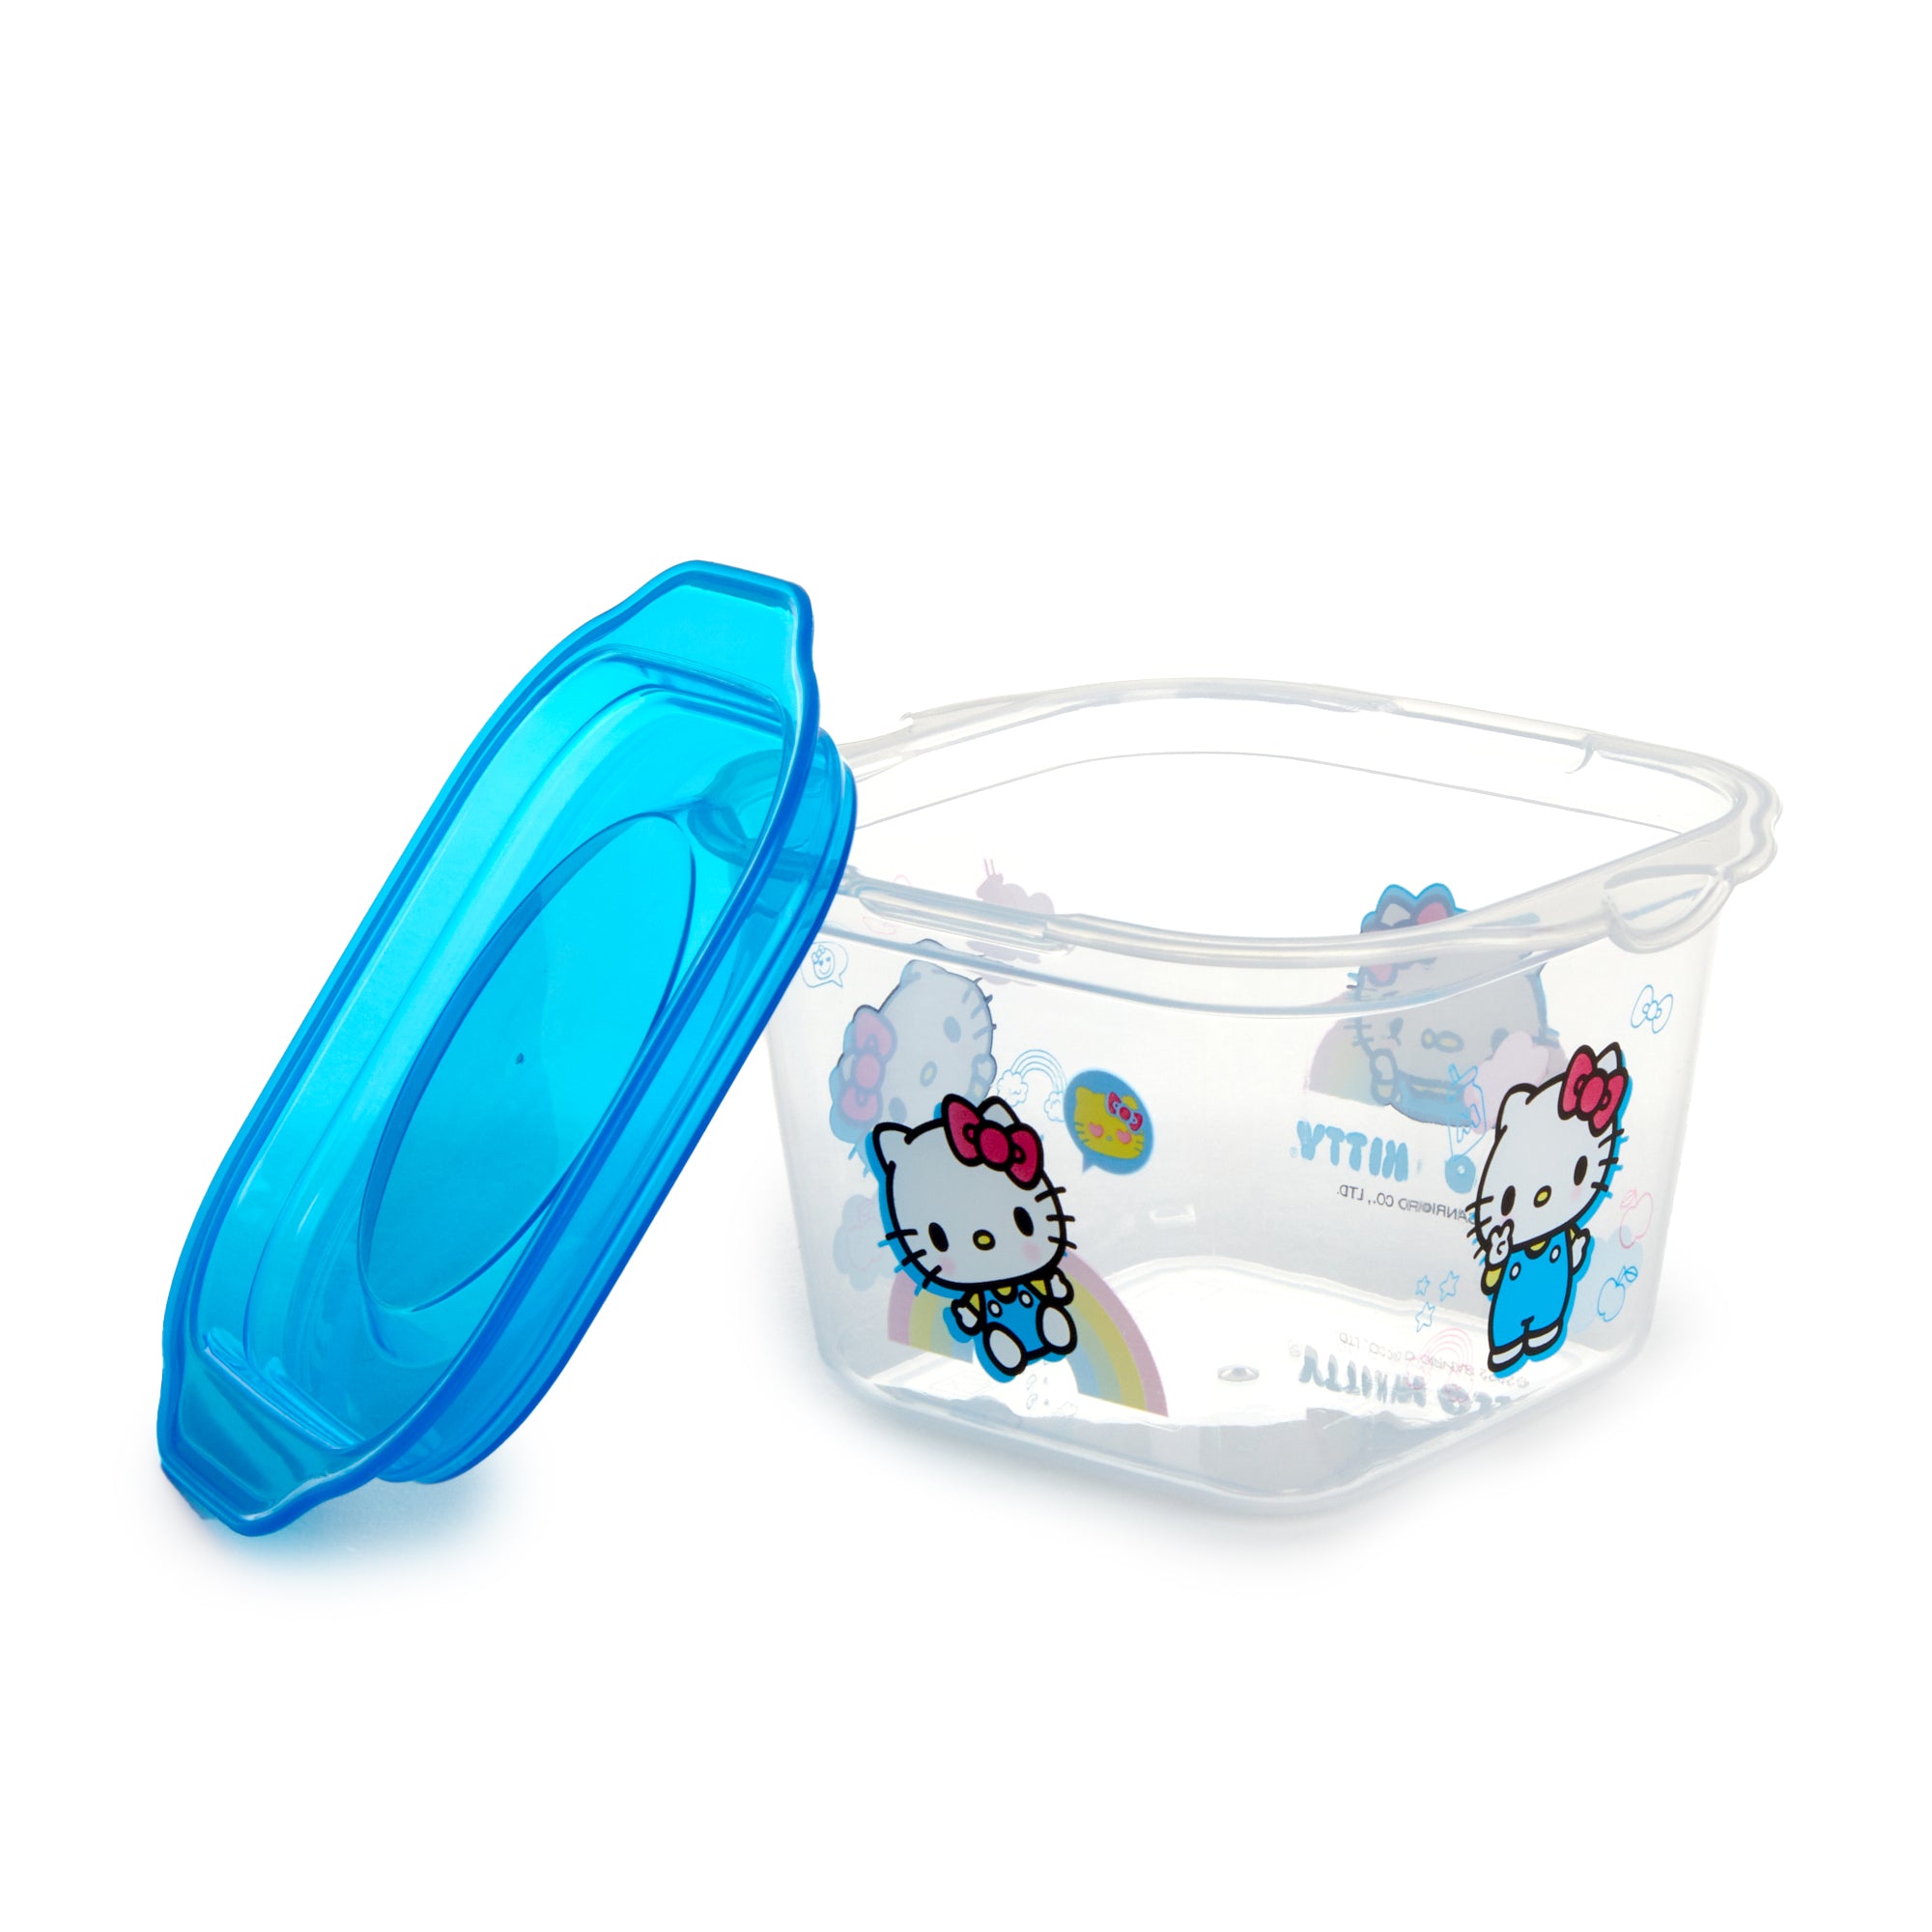 6-Piece Glass Food Storage Set: Hello Kitty, Fern